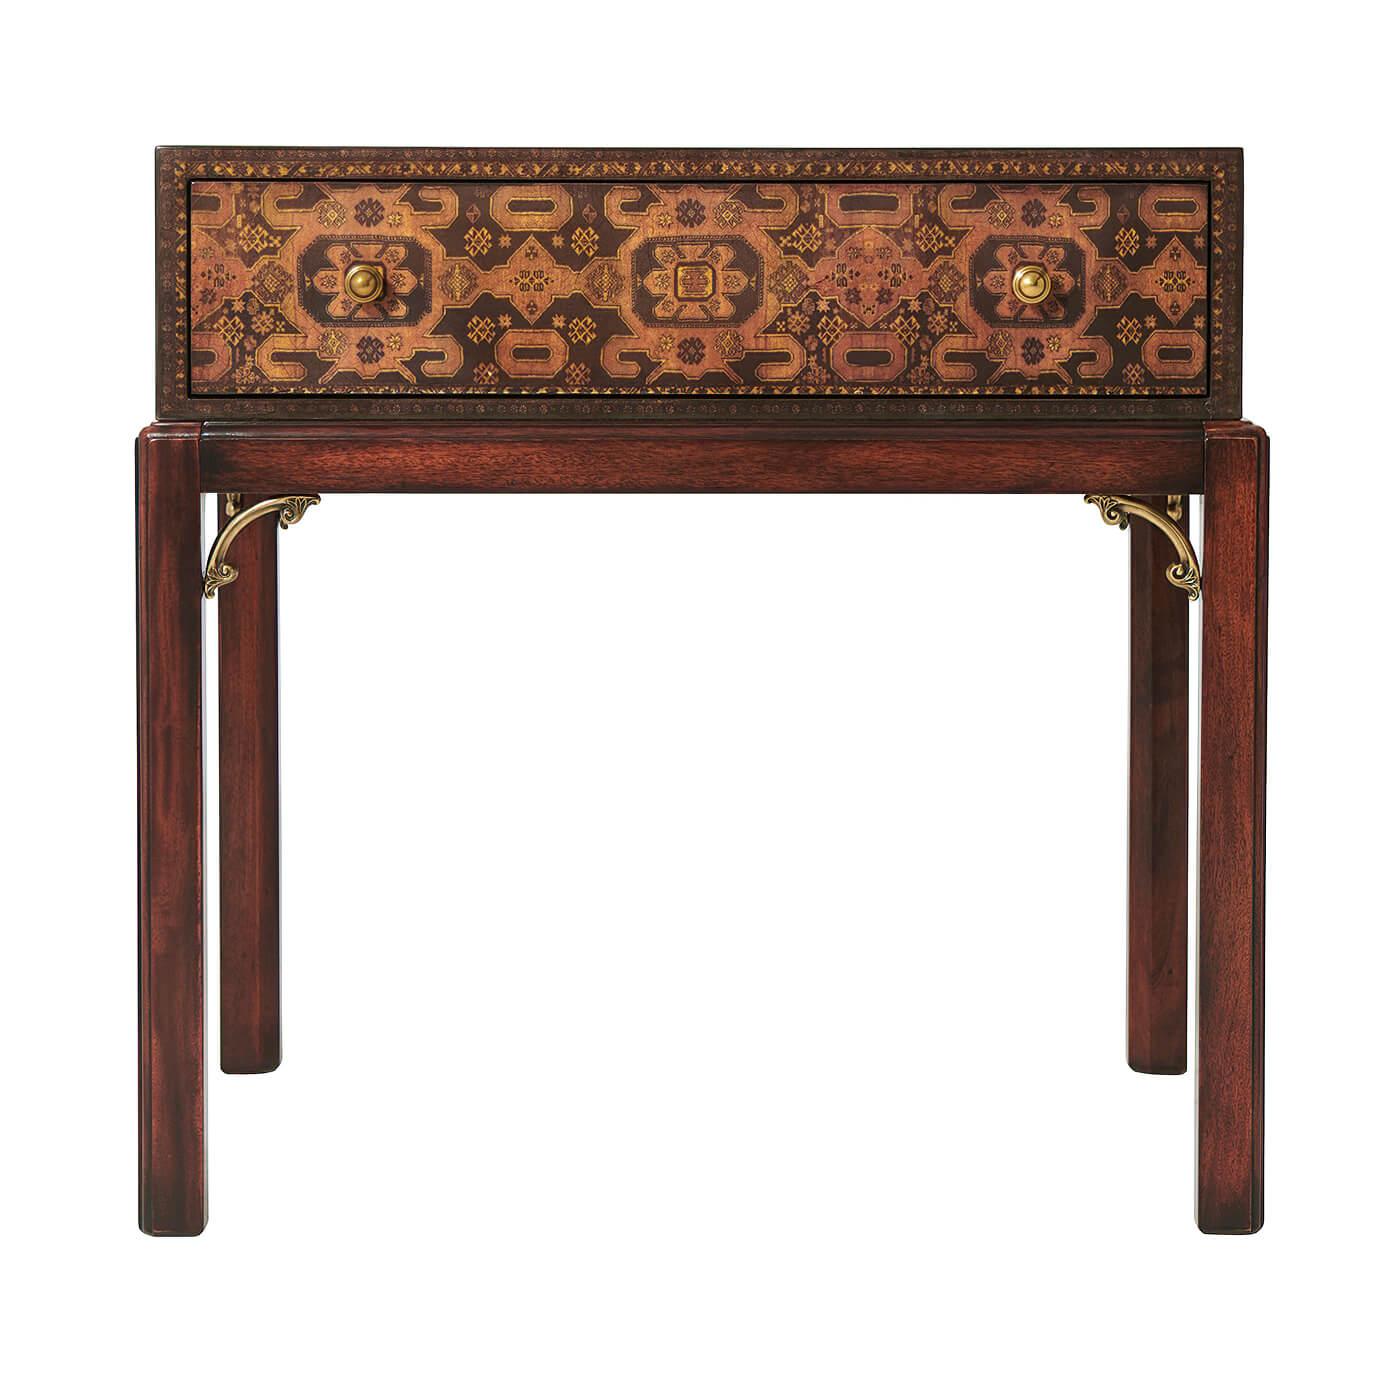 Une table d'appoint en tapis découpé, avec un tiroir en frise sur des pieds carrés chanfreinés. L'original George III.

Dimensions : 25